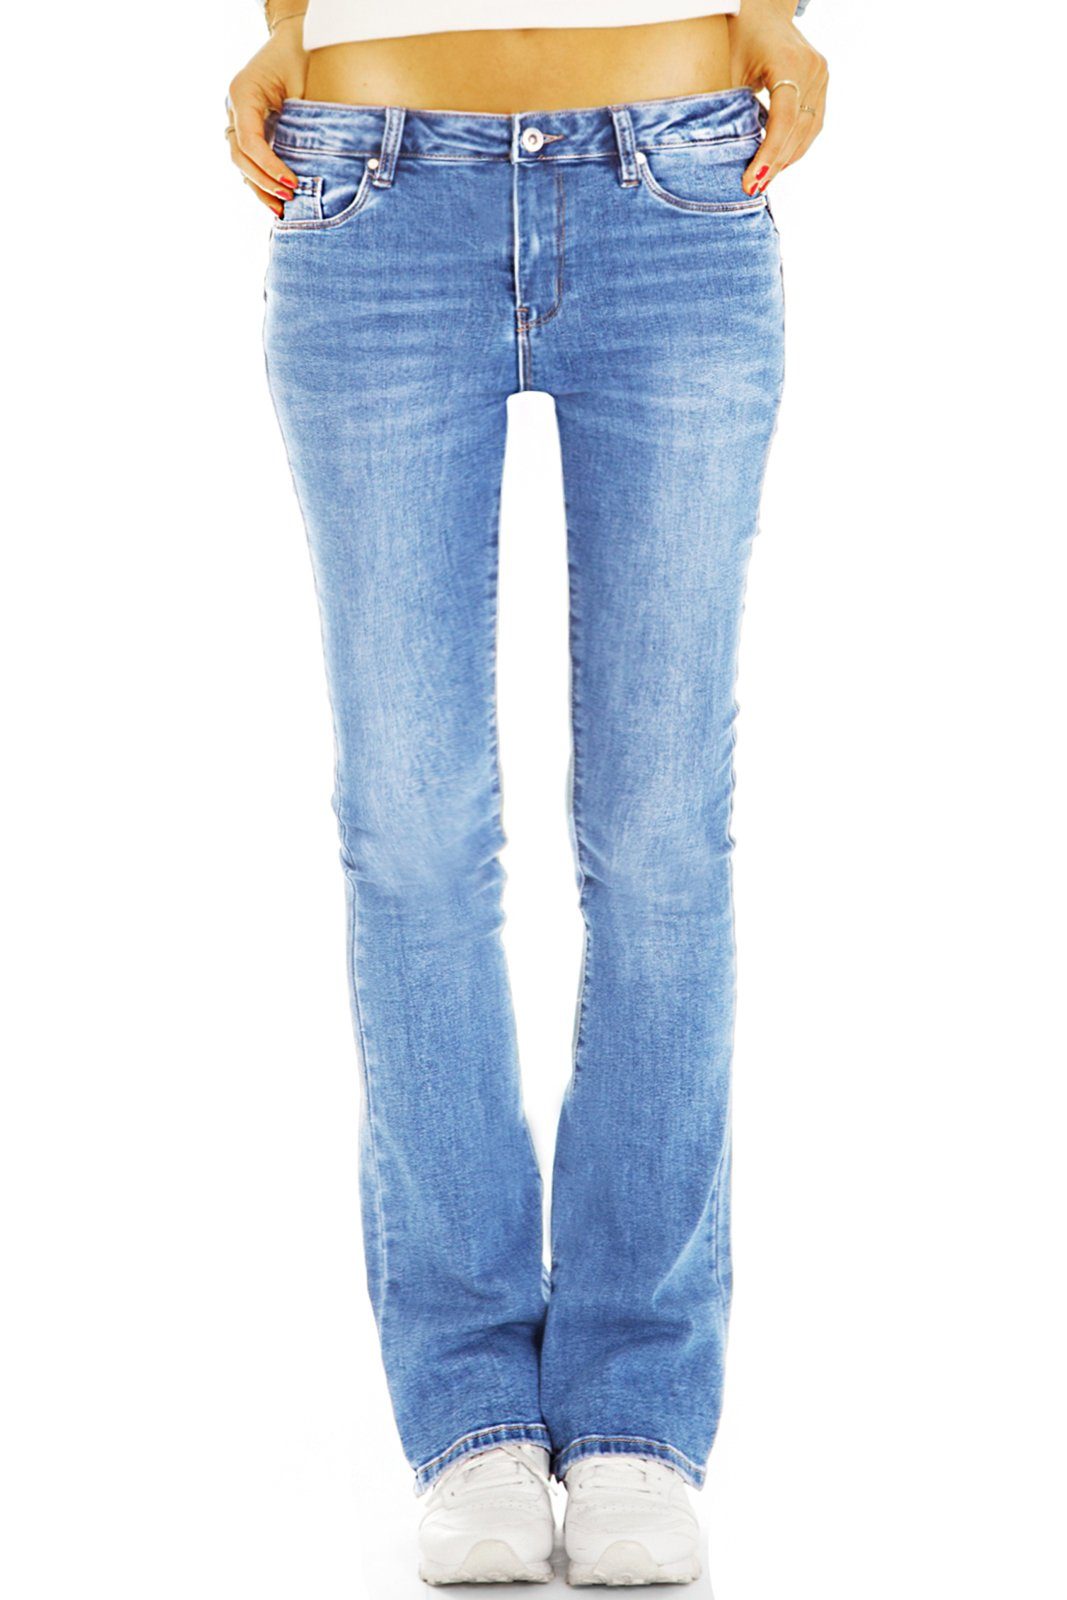 be styled Bootcut-Jeans Bootcut Jeans Medium Waist bequeme Stretch Denim Hosen - Damen - j44p mit Stretch-Anteil, 5-Pocket-Style hellblau